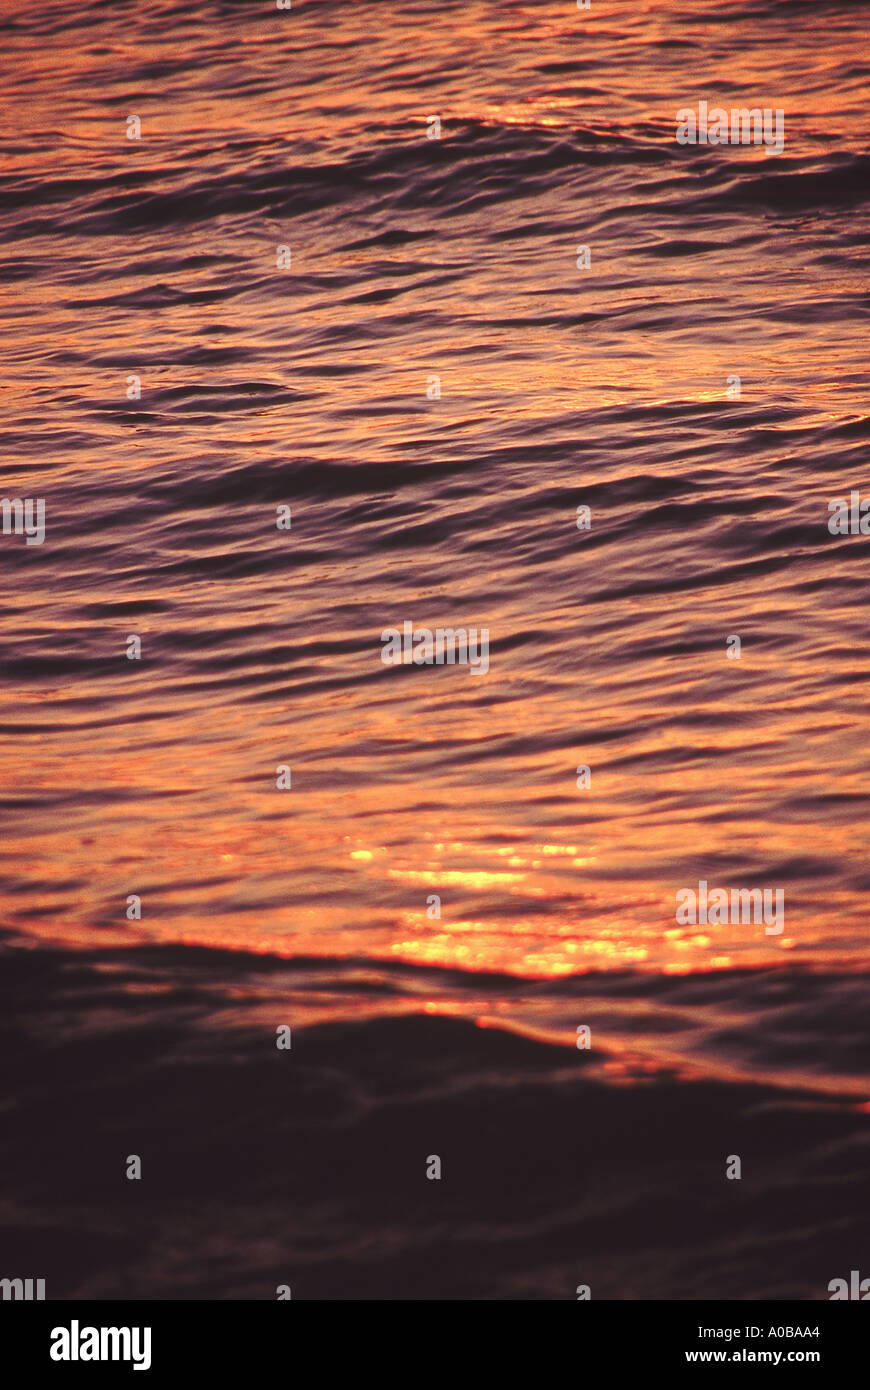 Das Meer spiegelt die Farben des Sonnenuntergangs. Stockfoto